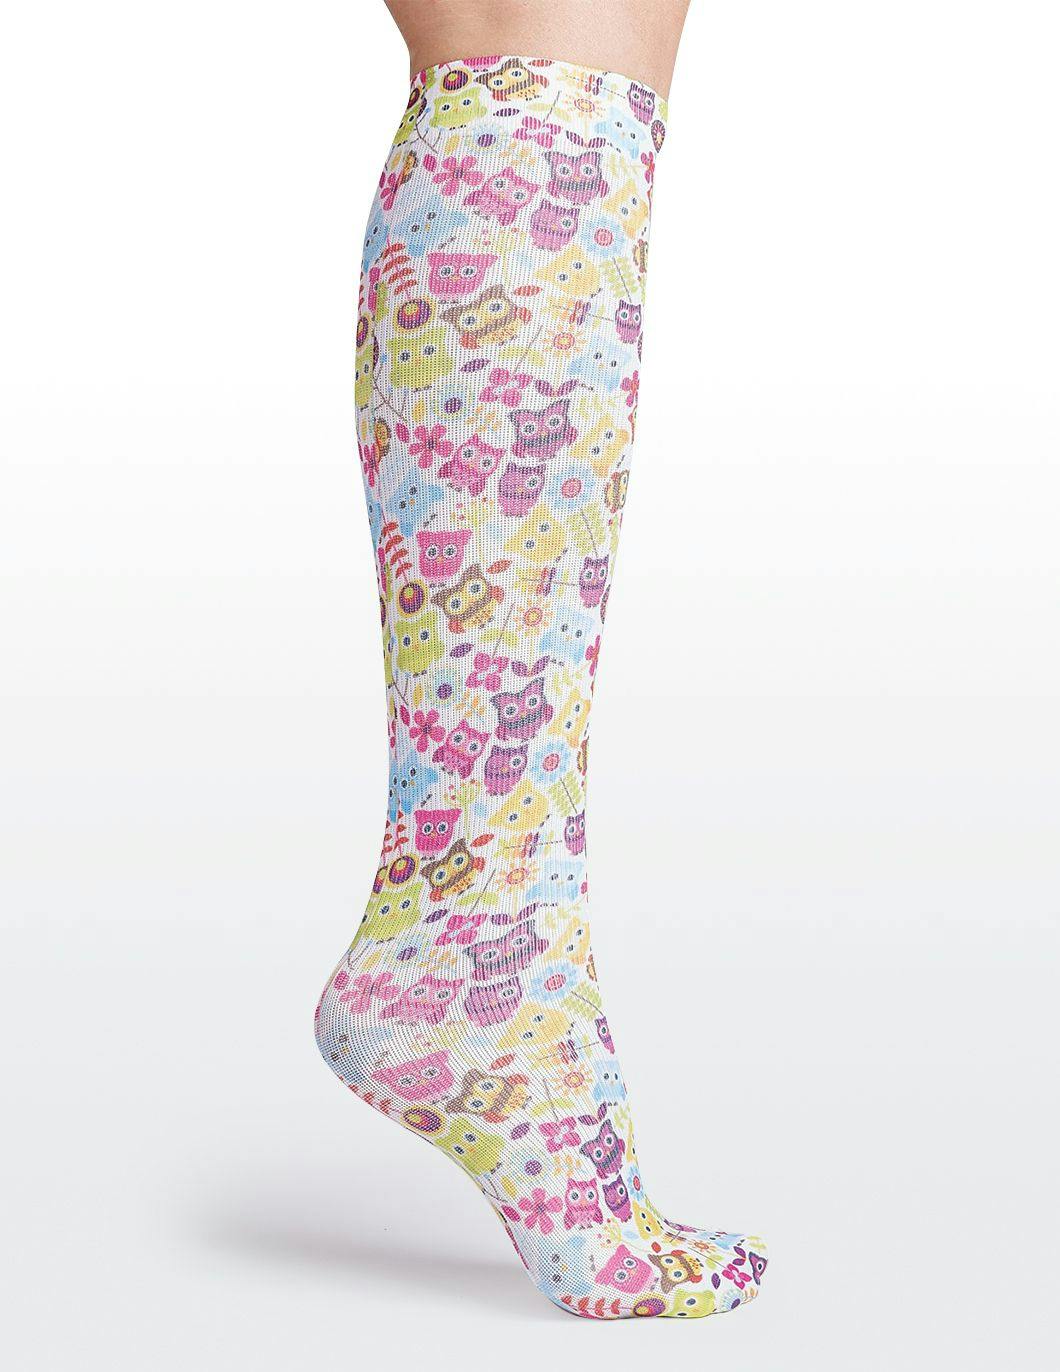 cutieful-compression-socks-10-18-mmhg-hootiful-owls-print